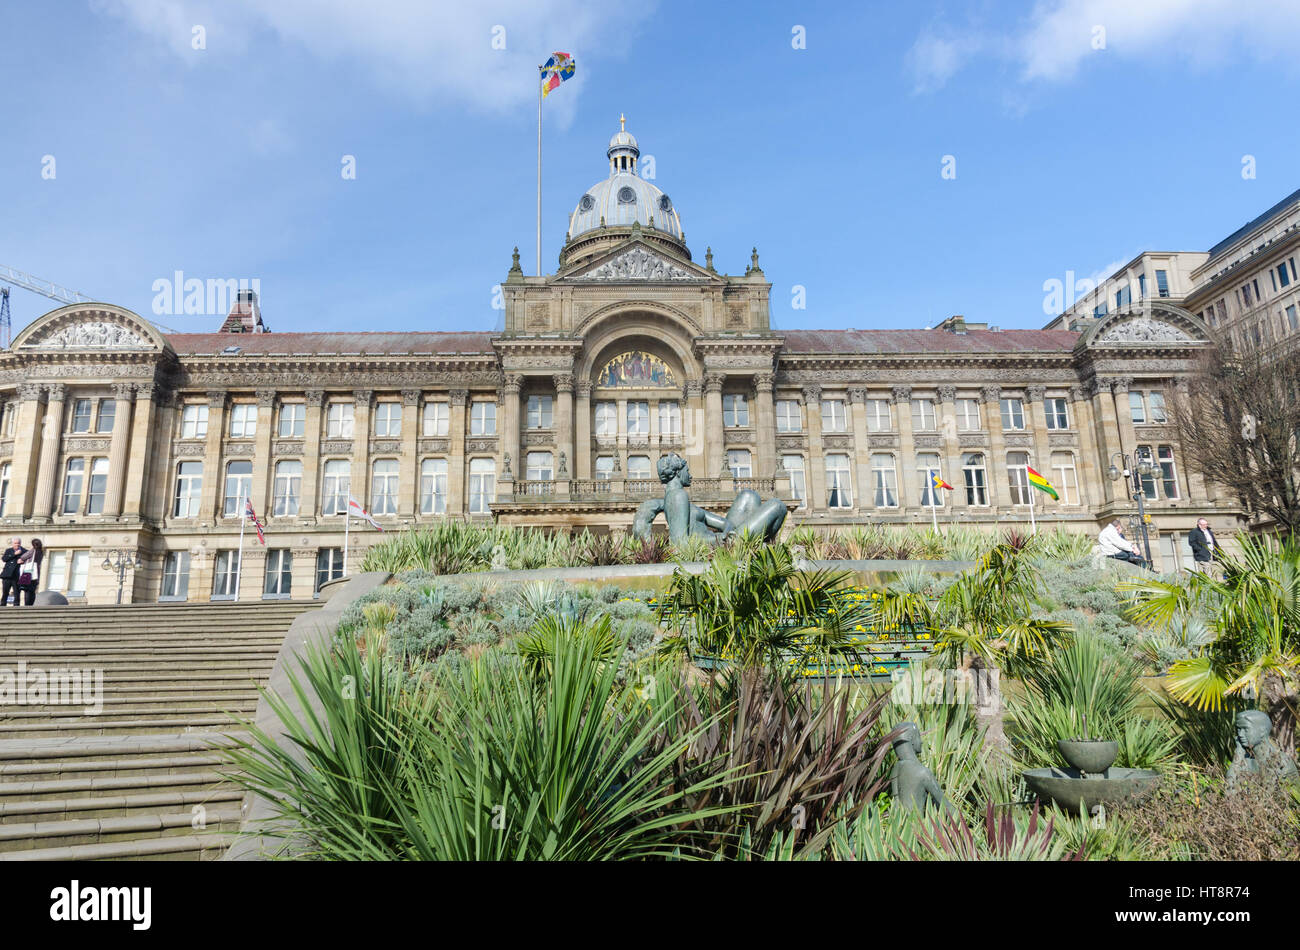 Birmingham Council in Victoria Square, Birmingham Stock Photo